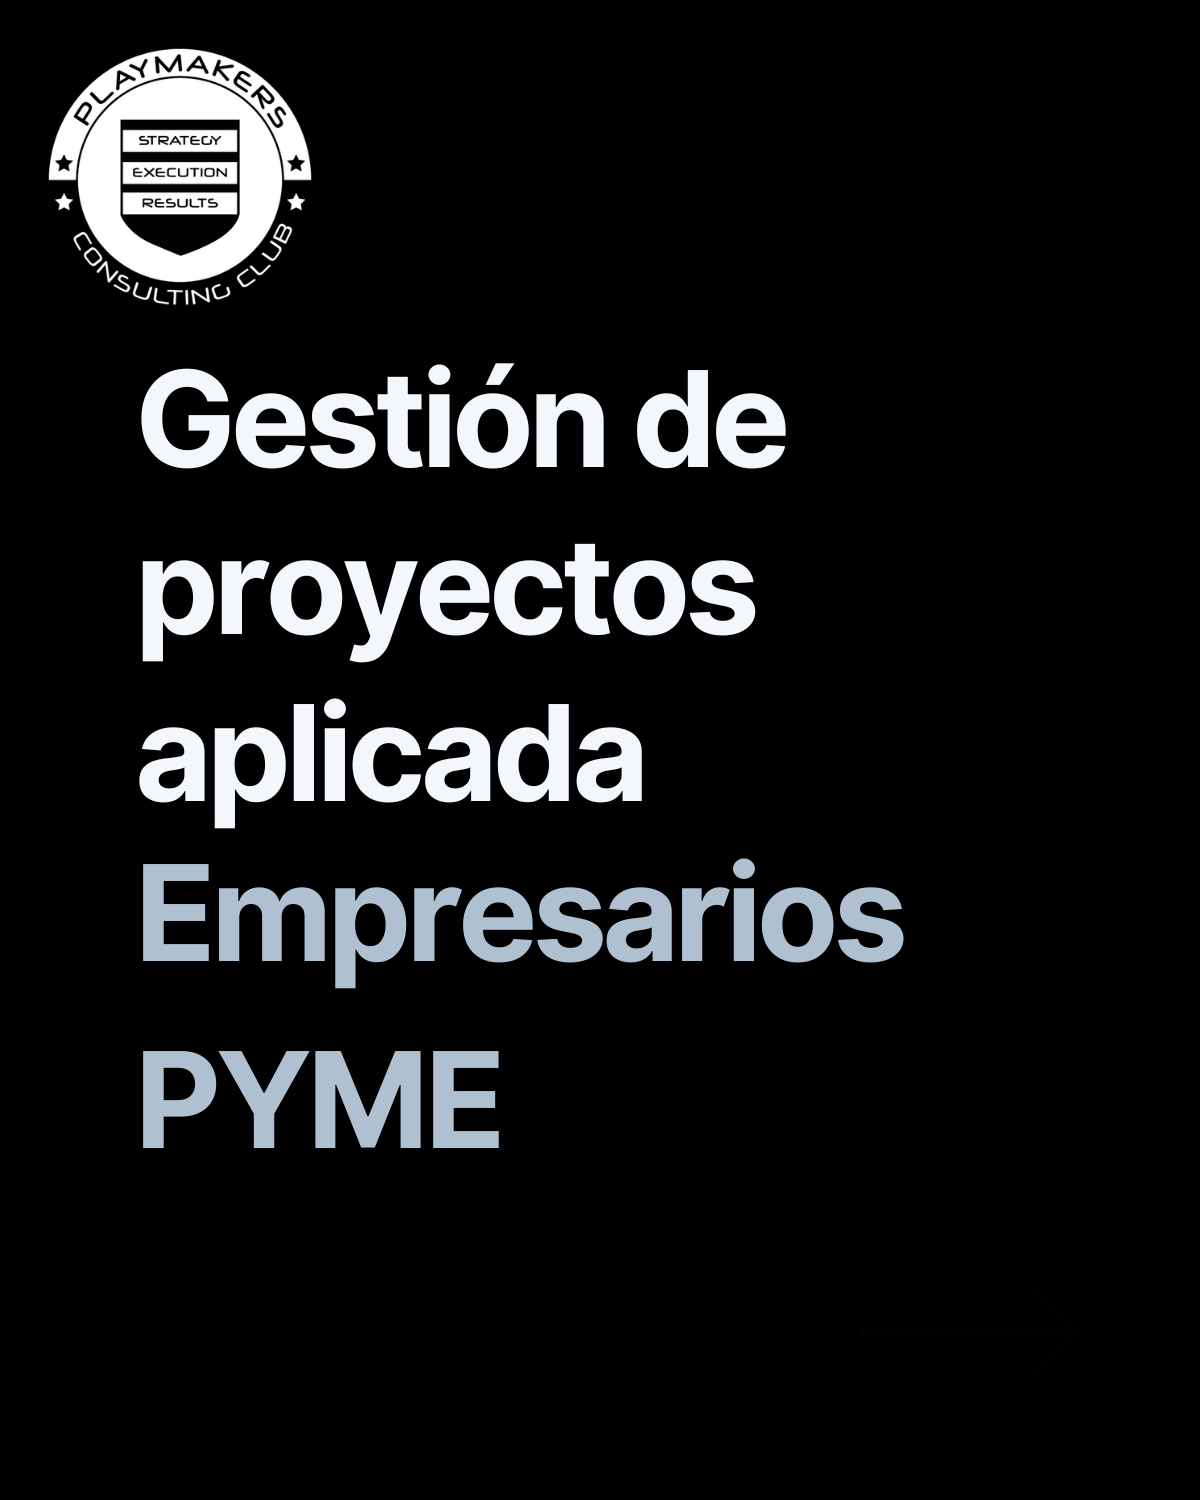 Gesteión de proyectos aplicada para empresarios pyme en España